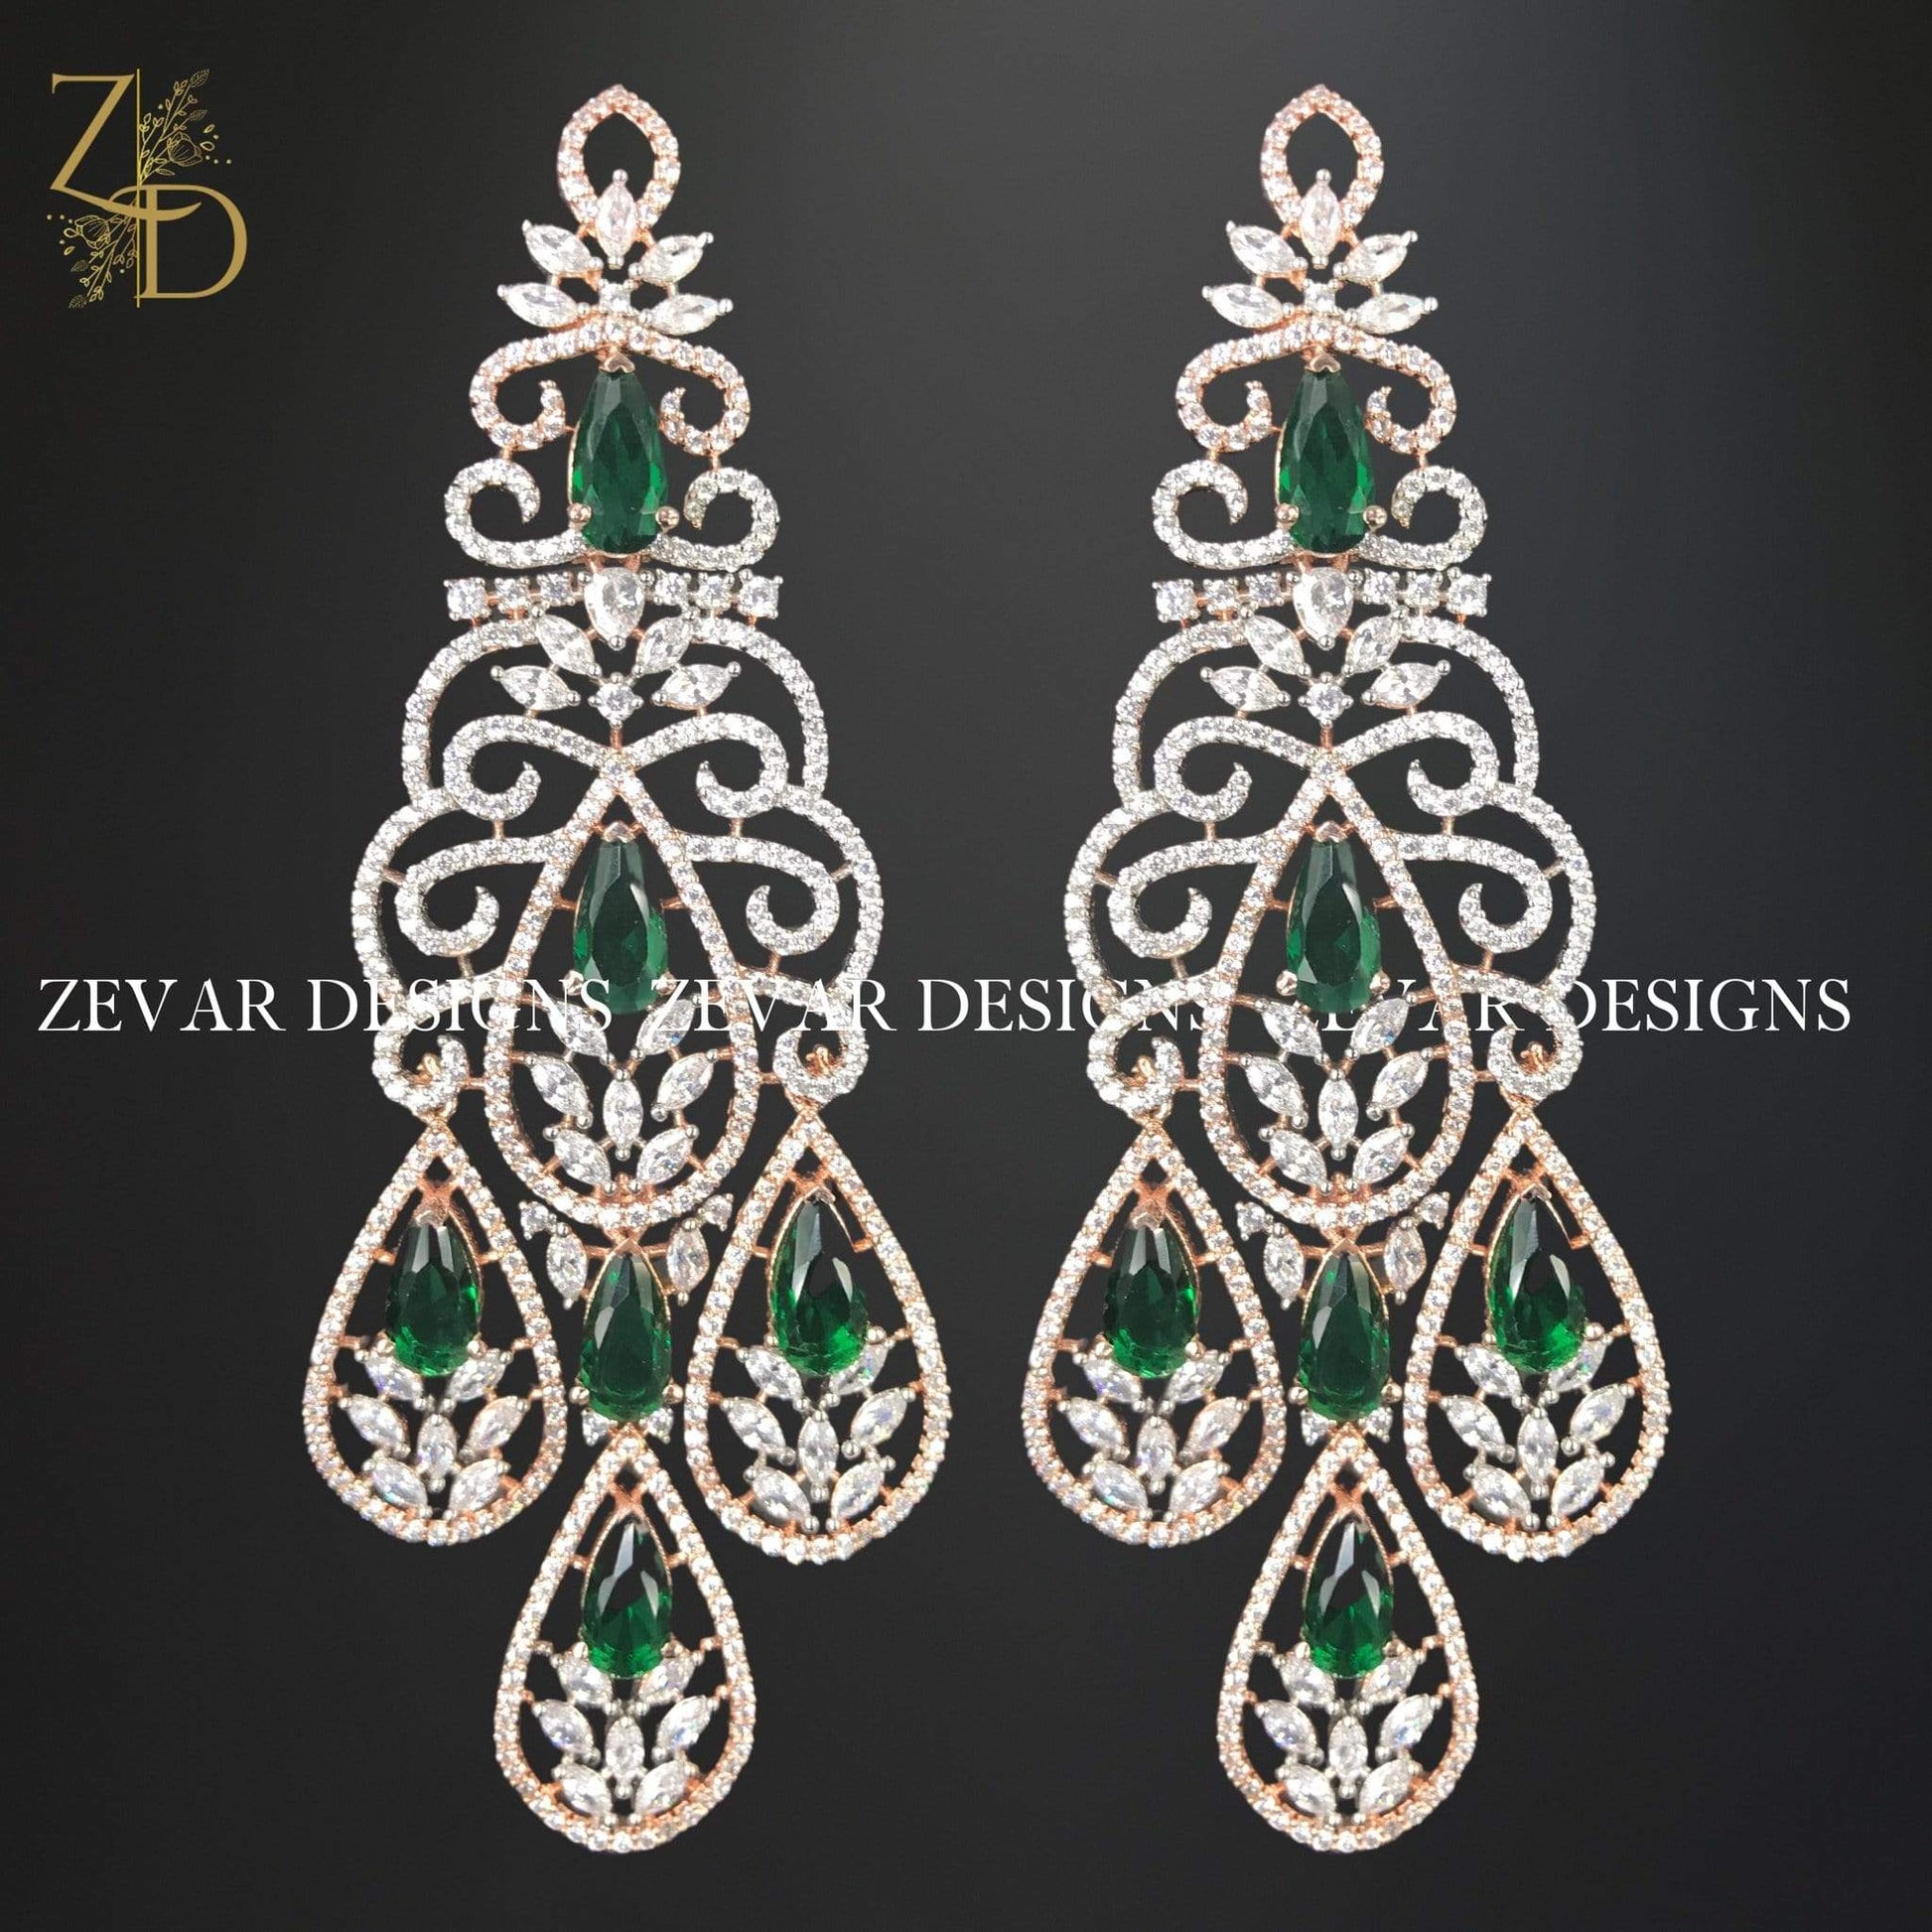 Zevar Designs Zirconia Earrings in Emerald Green and Rose Gold